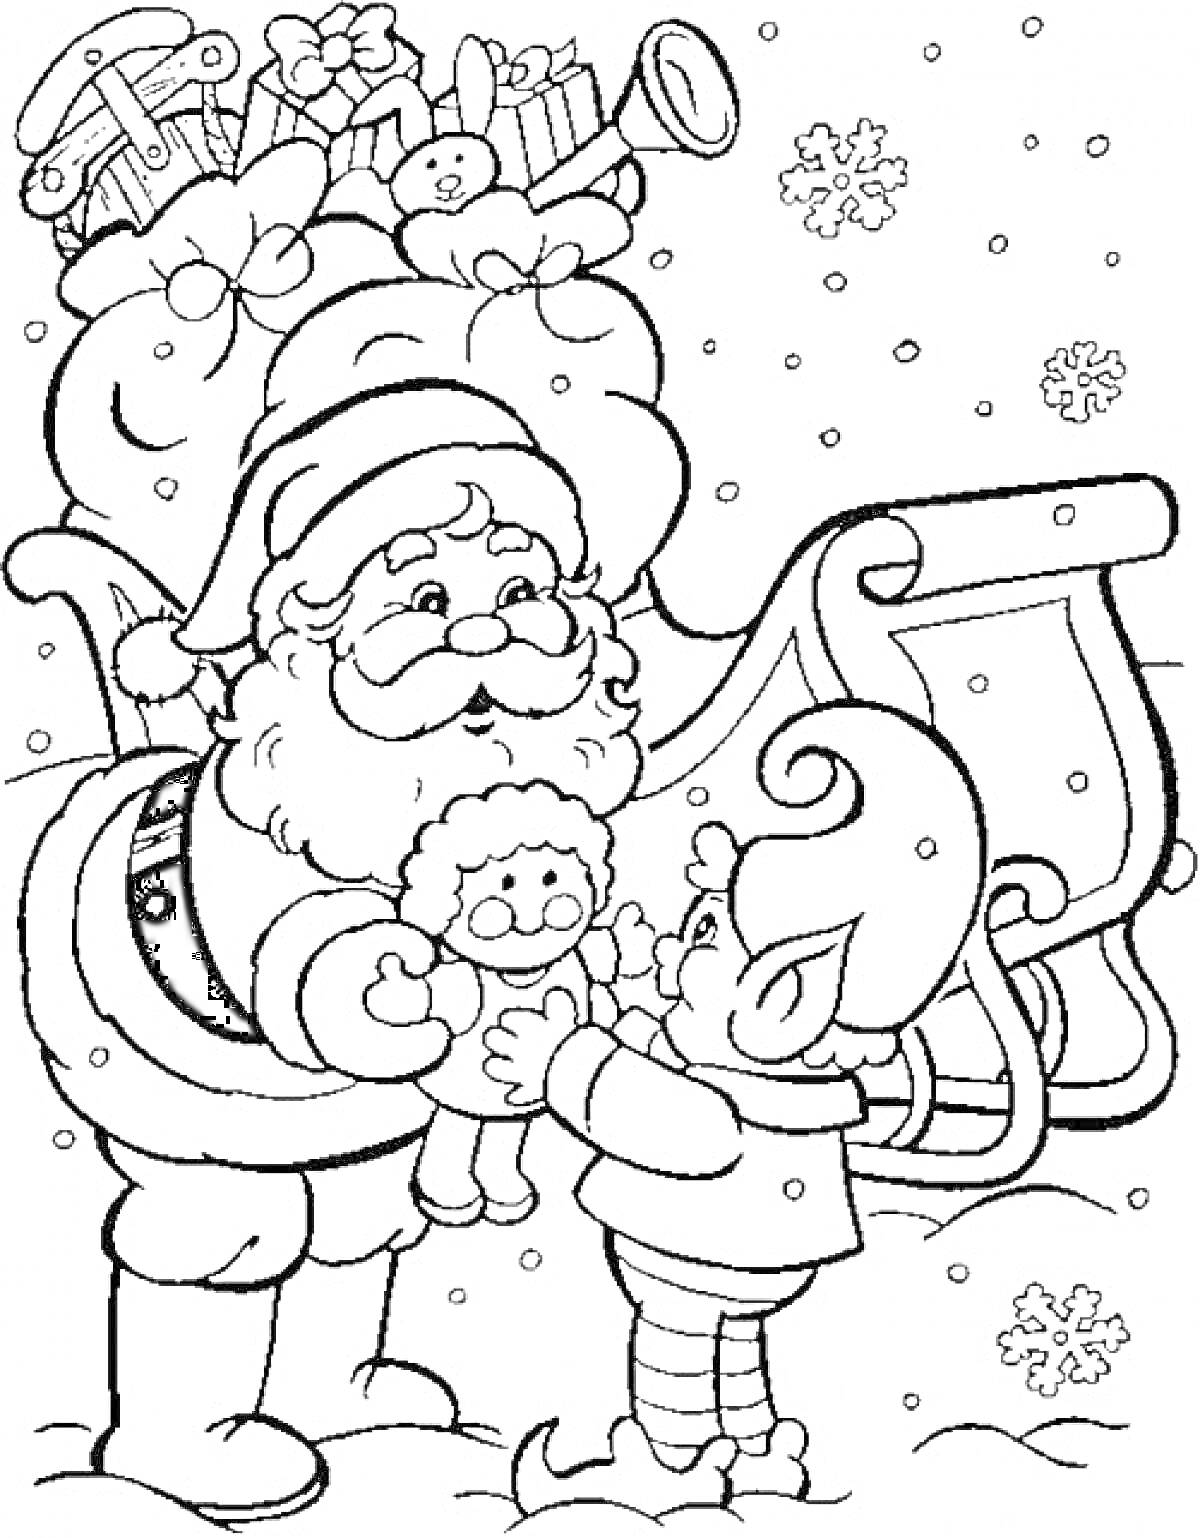 Санта Клаус и эльф рядом с упряжкой, с мешком подарков и снегом